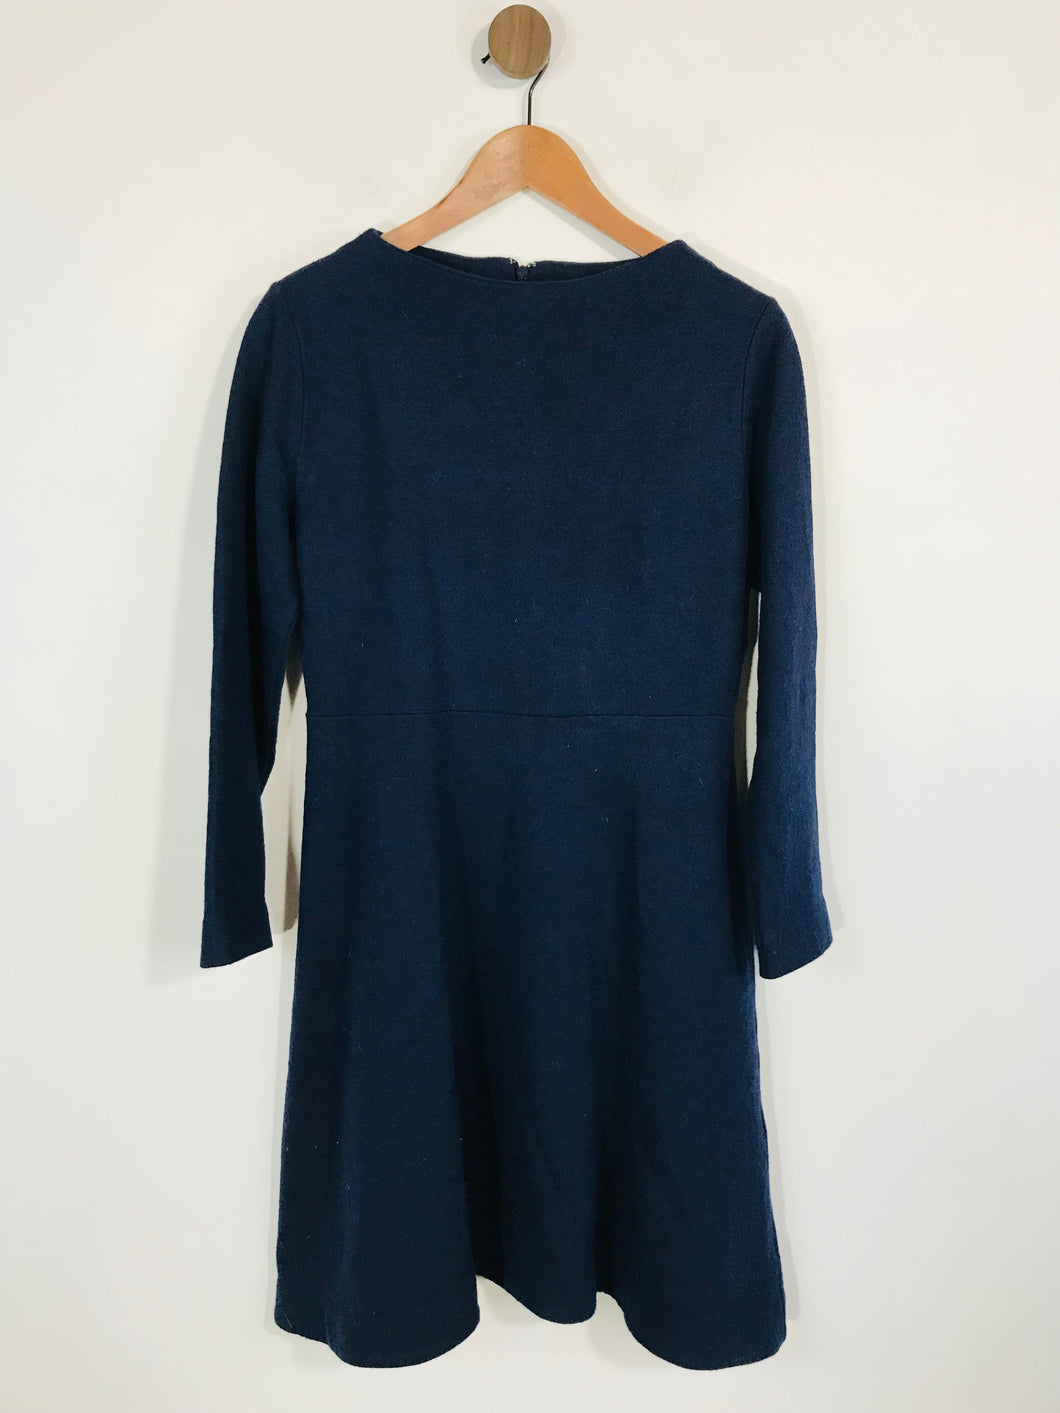 Cos Women's Smart Sheath Dress | M UK10-12 | Blue